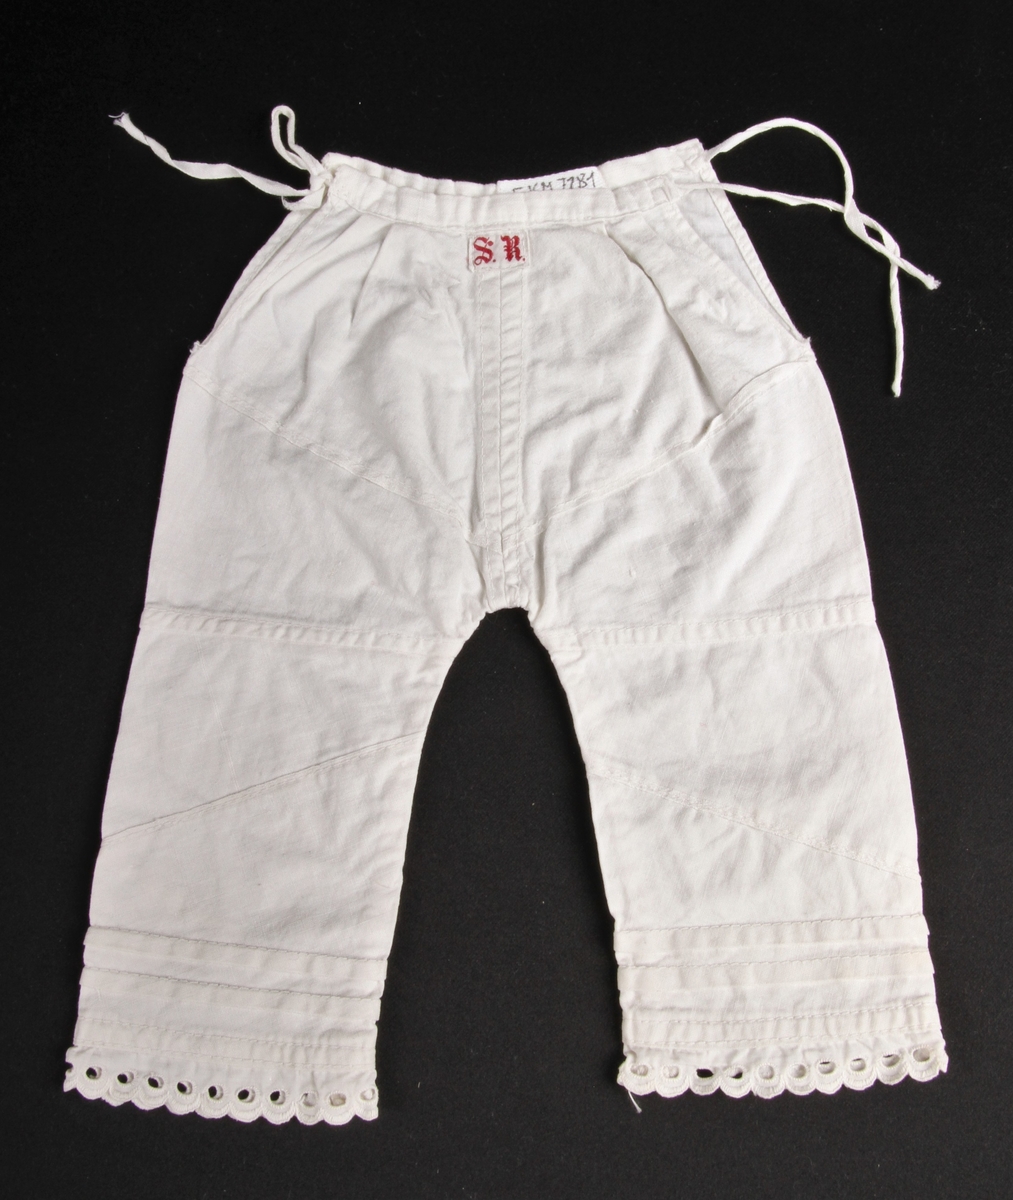 Hvit bomullsmamelukk til dukke eller spedbarn, med knyting i sidene og blondekant nederst på beina.